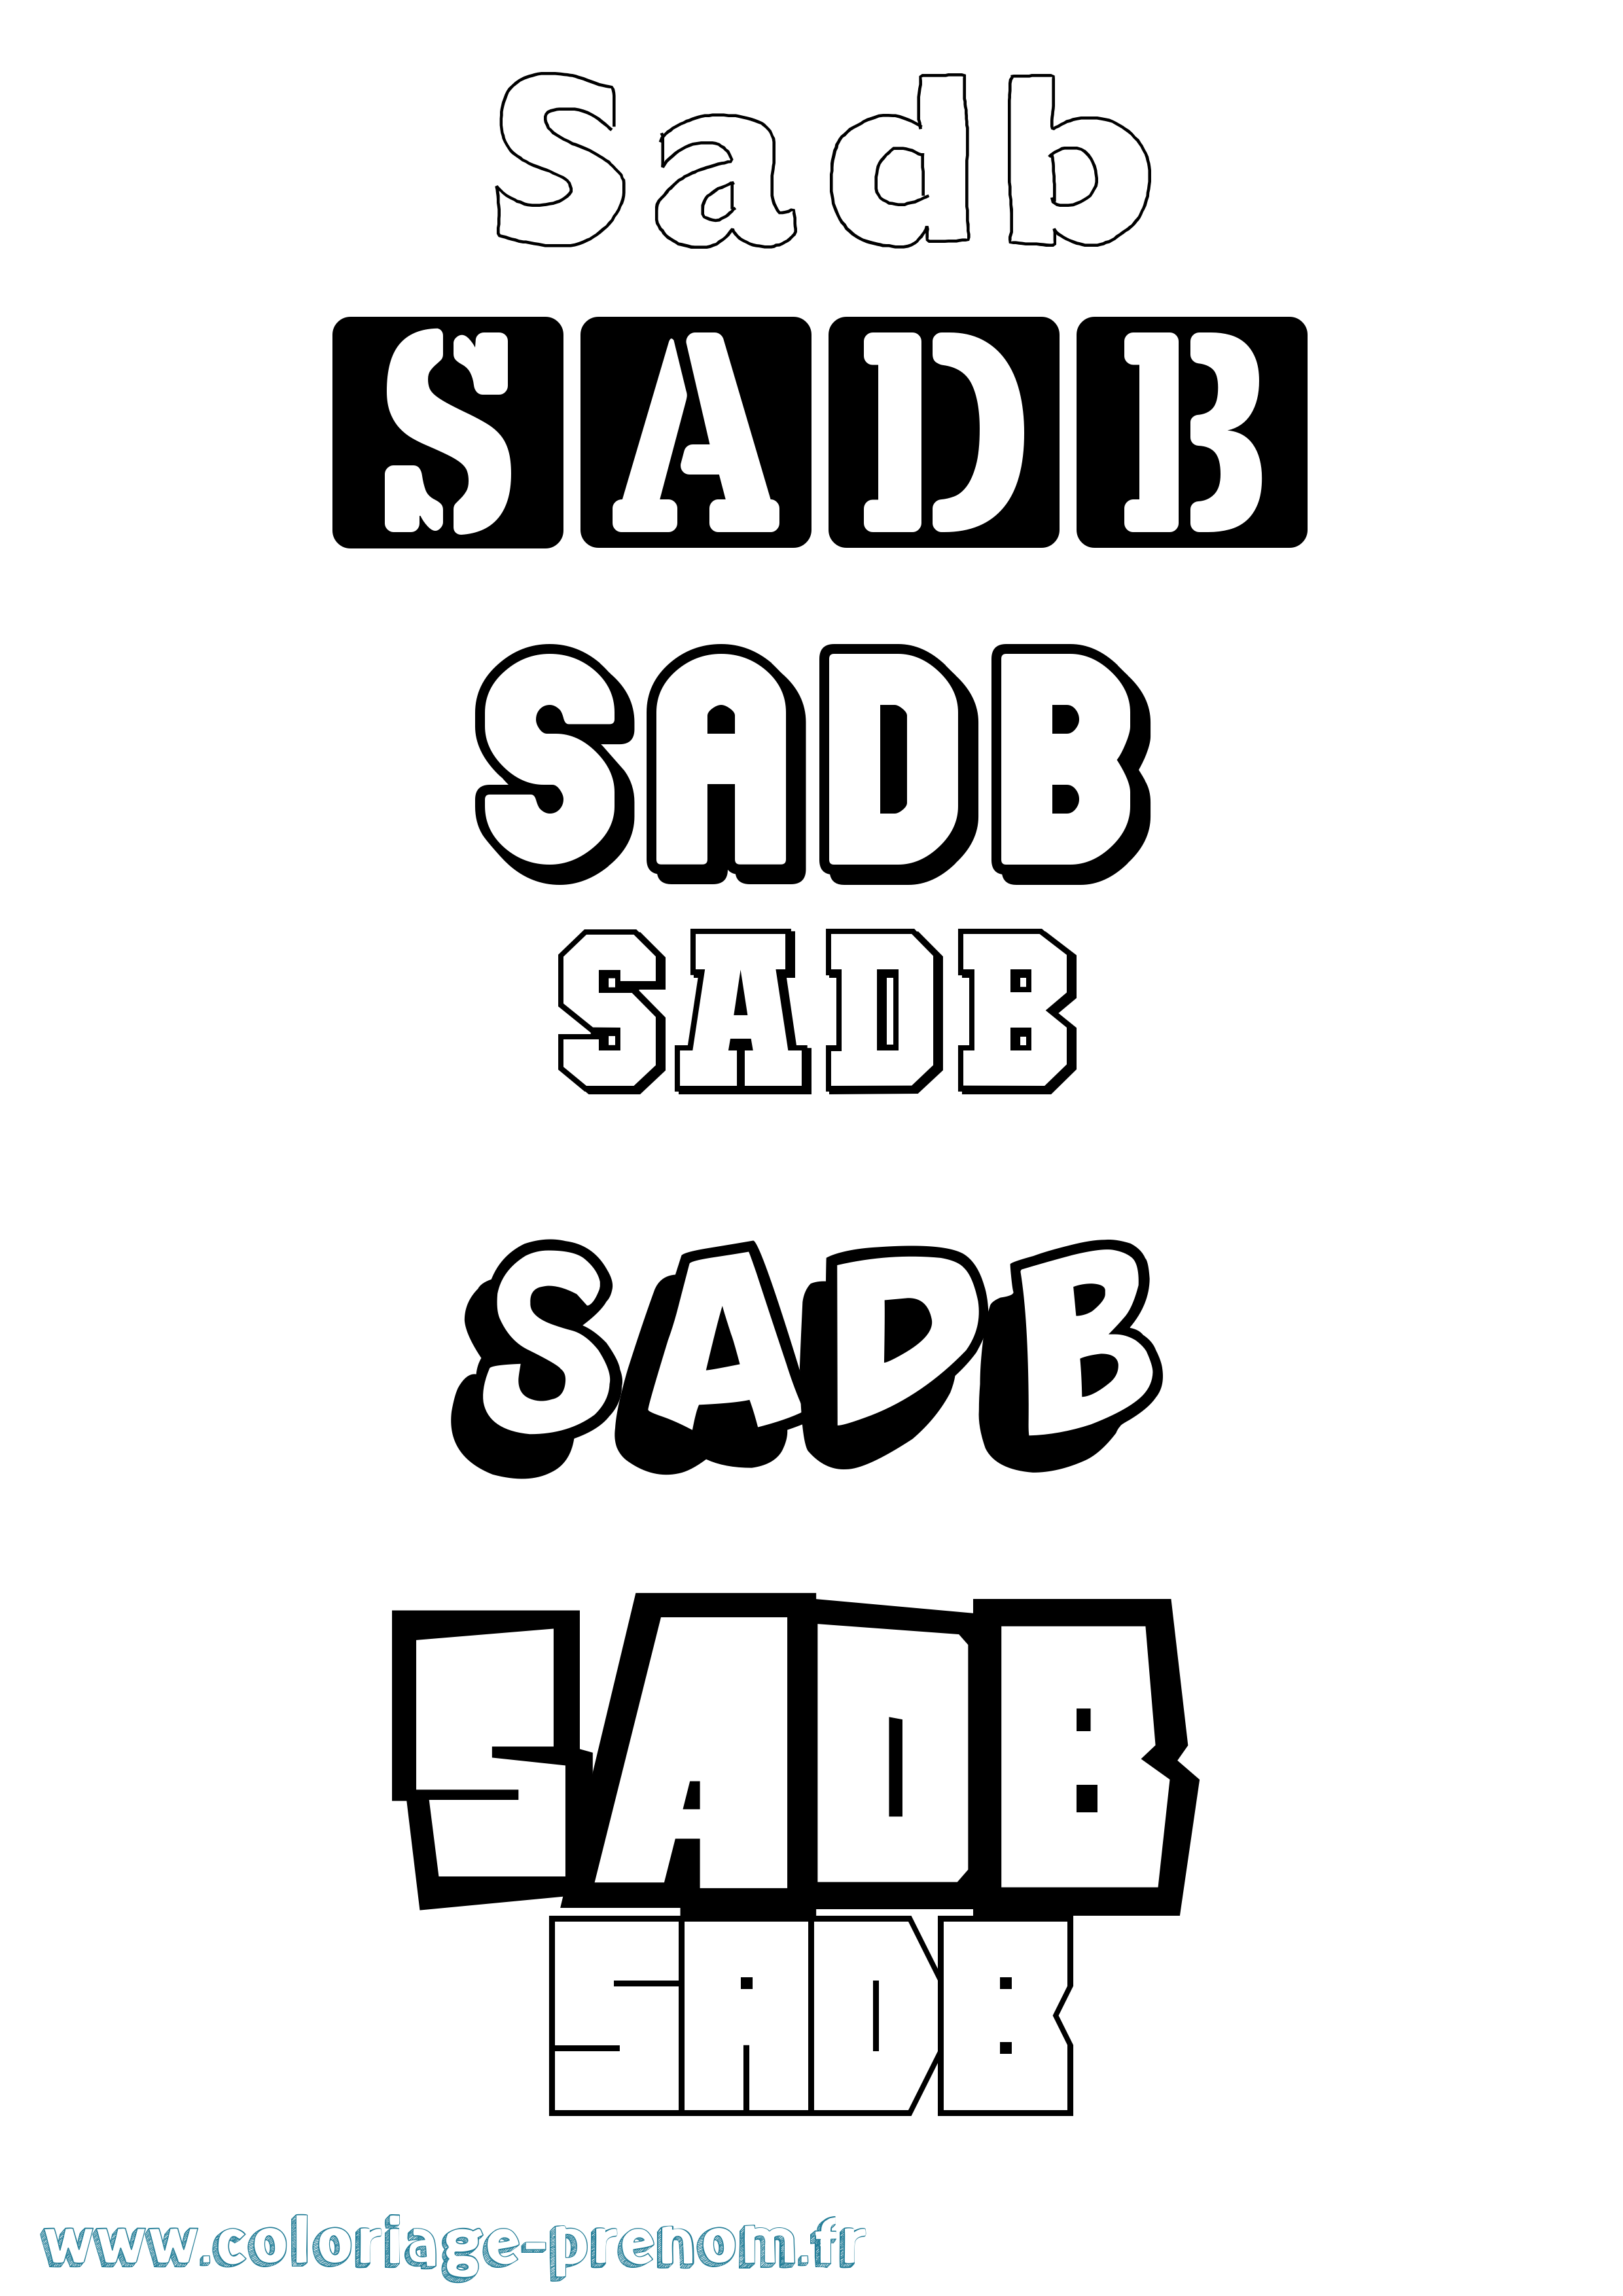 Coloriage prénom Sadb Simple